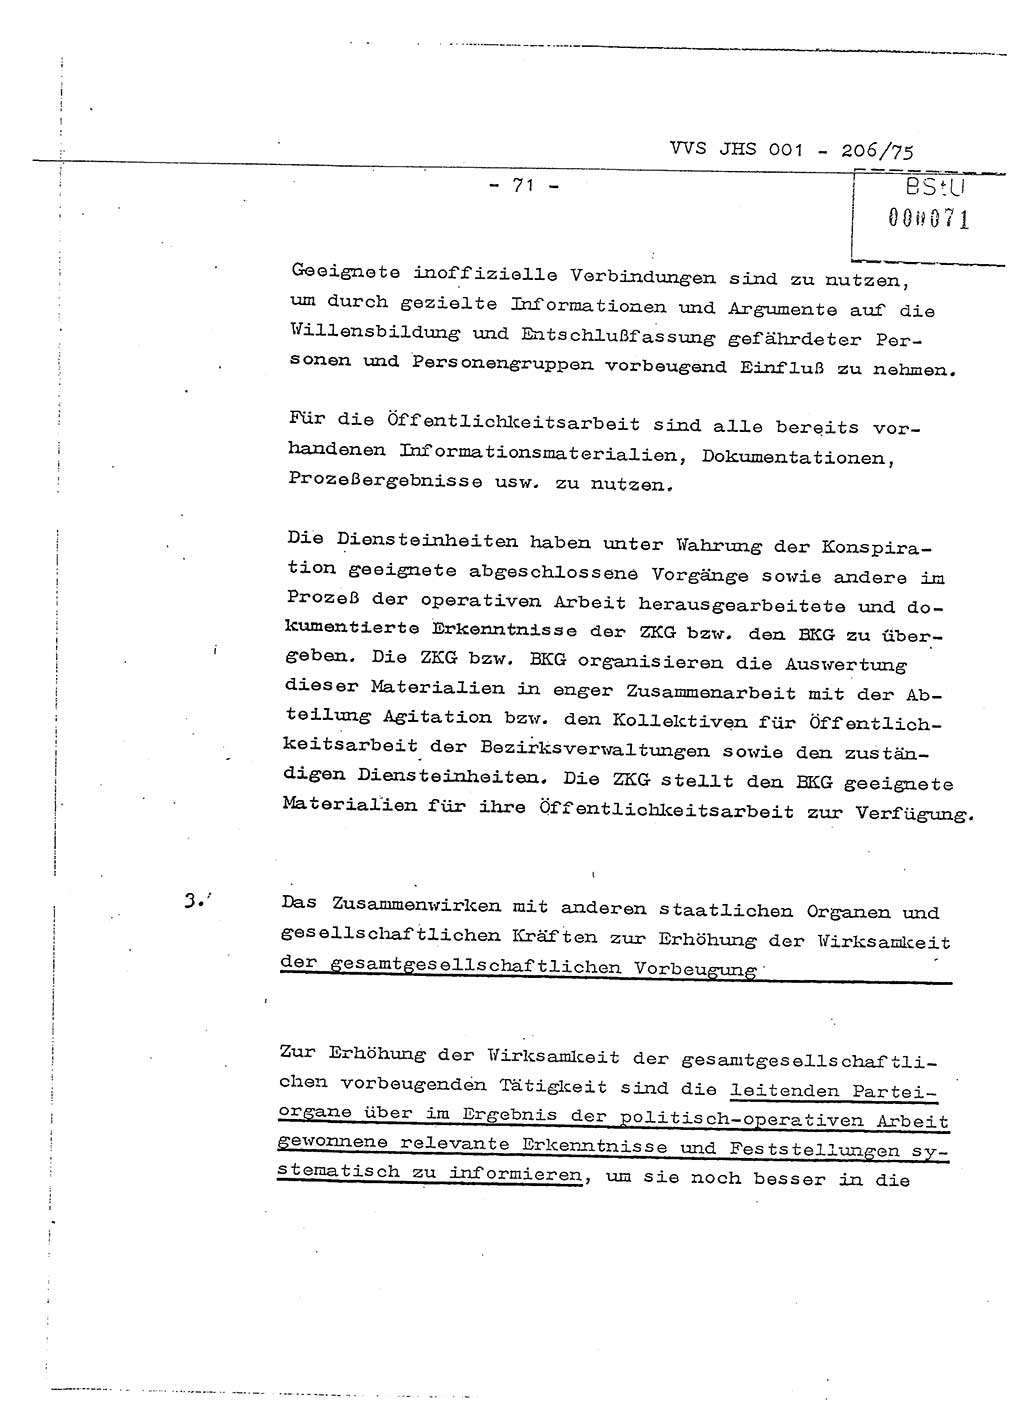 Dissertation Generalmajor Manfred Hummitzsch (Leiter der BV Leipzig), Generalmajor Heinz Fiedler (HA Ⅵ), Oberst Rolf Fister (HA Ⅸ), Ministerium für Staatssicherheit (MfS) [Deutsche Demokratische Republik (DDR)], Juristische Hochschule (JHS), Vertrauliche Verschlußsache (VVS) 001-206/75, Potsdam 1975, Seite 71 (Diss. MfS DDR JHS VVS 001-206/75 1975, S. 71)